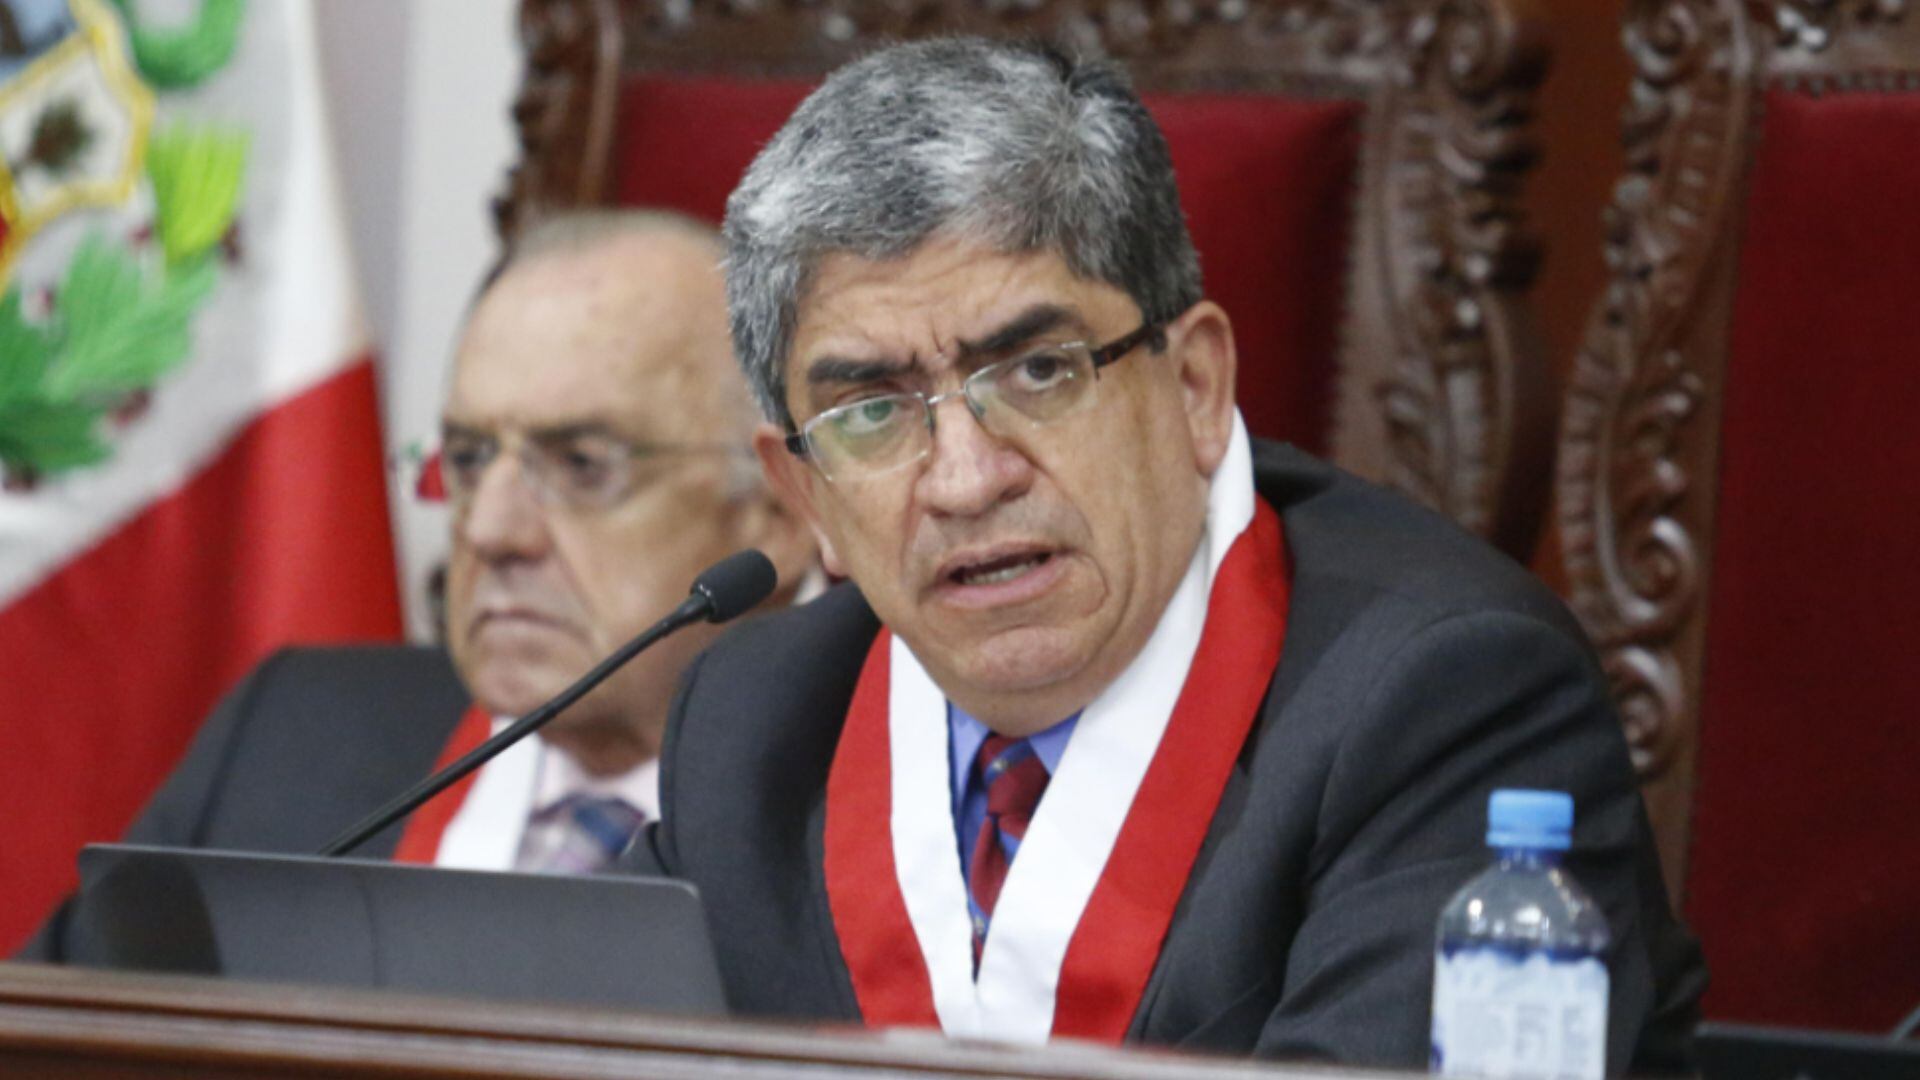 José Luis Sardón de Taboada tuvo un polémico paso por el Tribunal Constitucional al votar en contra de derechos humanos. Foto: La República